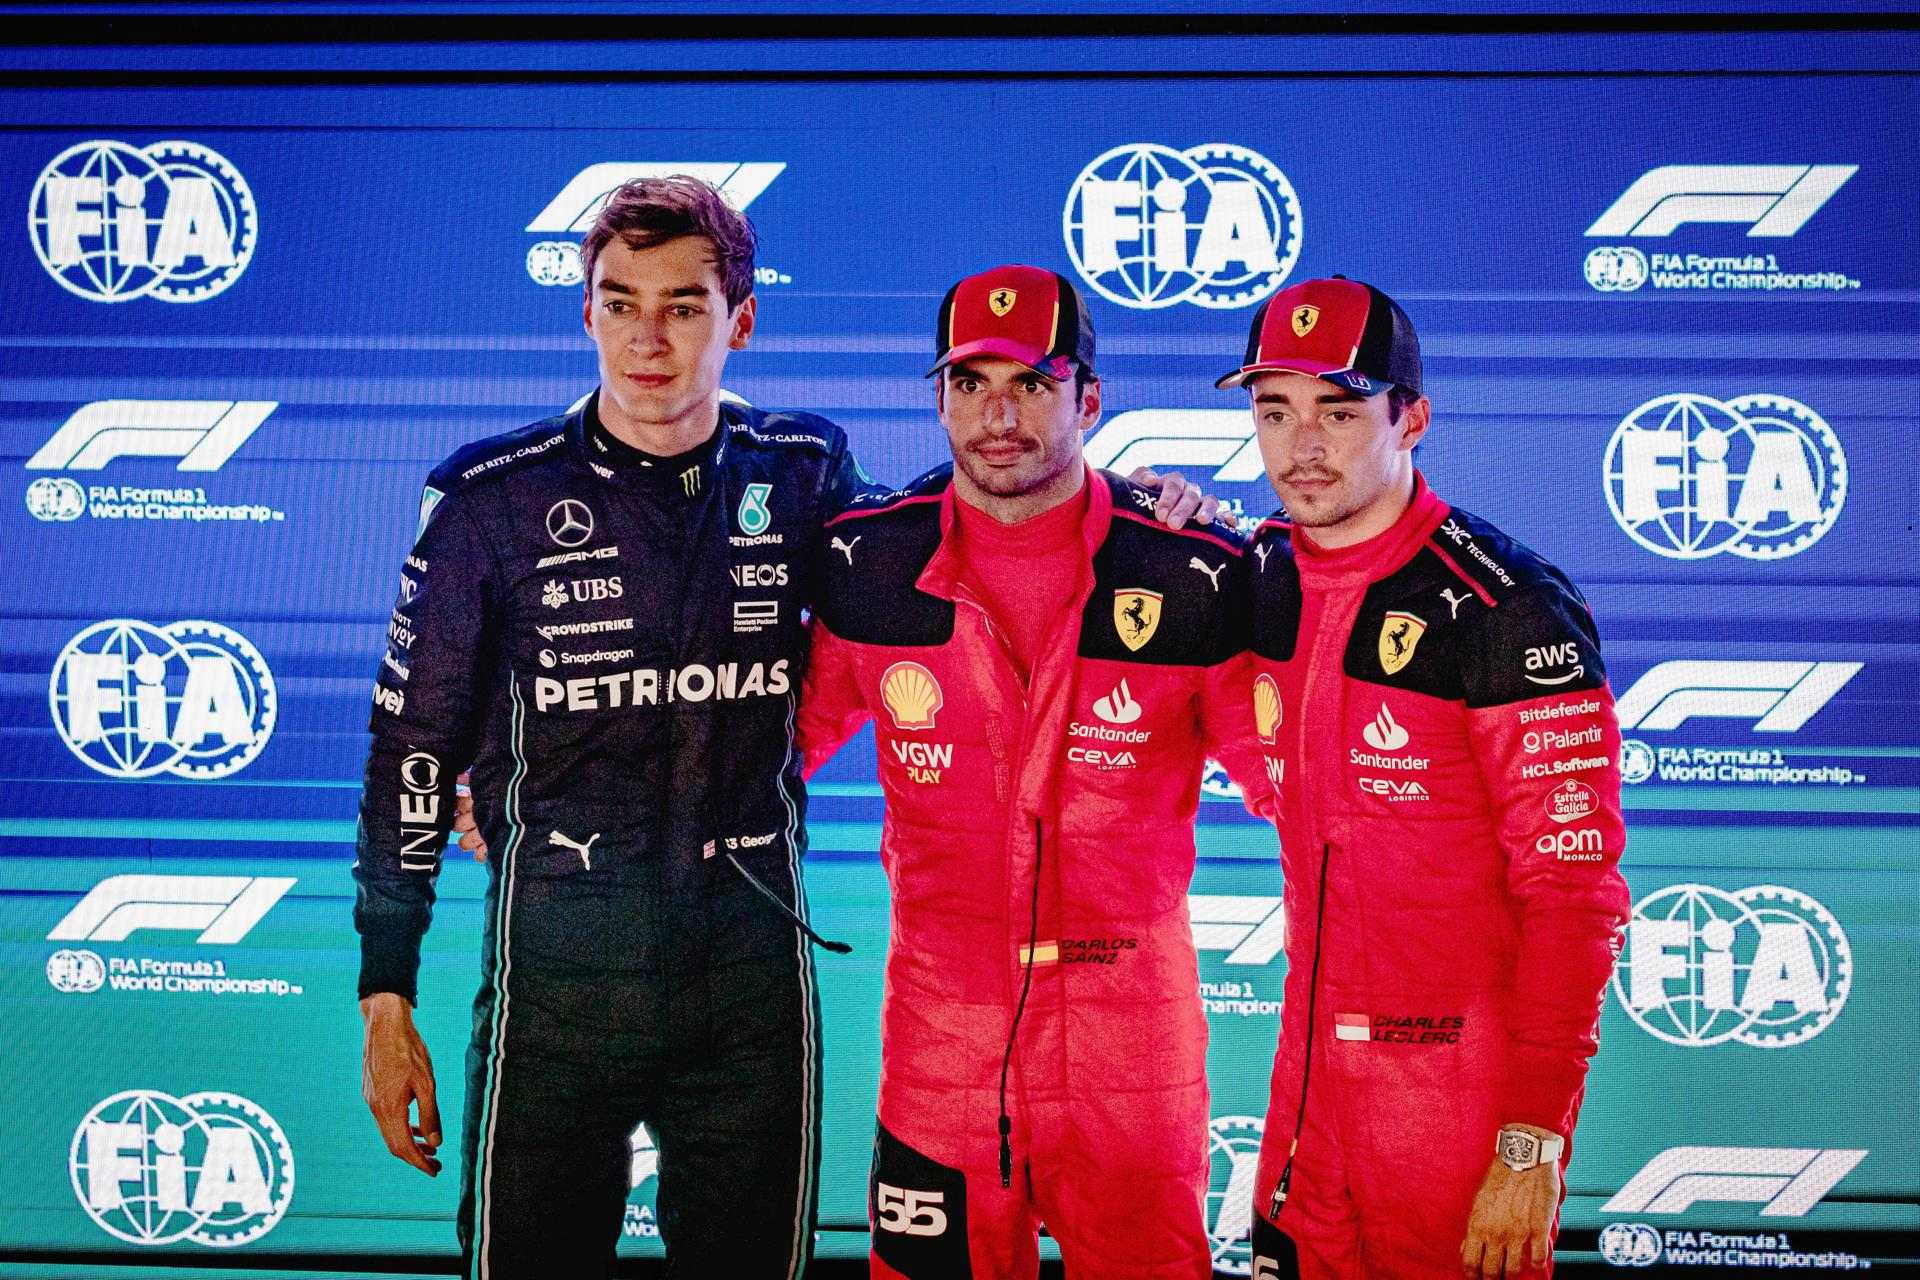 Leclerc gana 5 millones más que Carlos Sainz en Ferrari, pero 14 kilos menos que Fernando Alonso